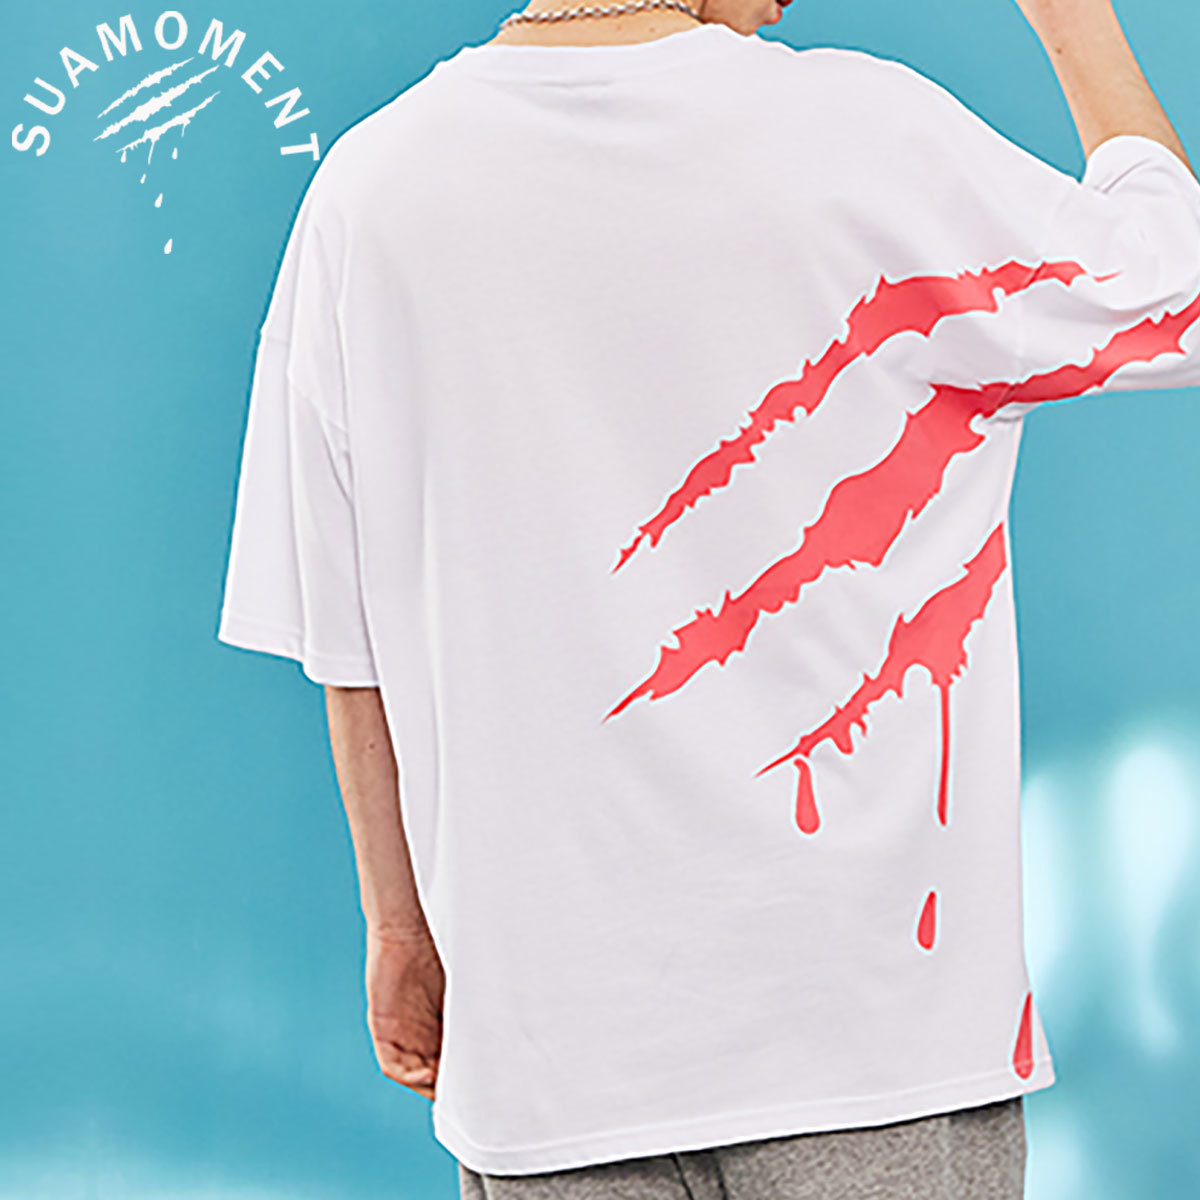 【 SUAMOMENT 】 ユニセックス オーバーサイズ バックプリント Tシャツ UNISEX CLAW MARKS NEON PRINT T-shirt ホワイトxピンク_画像1